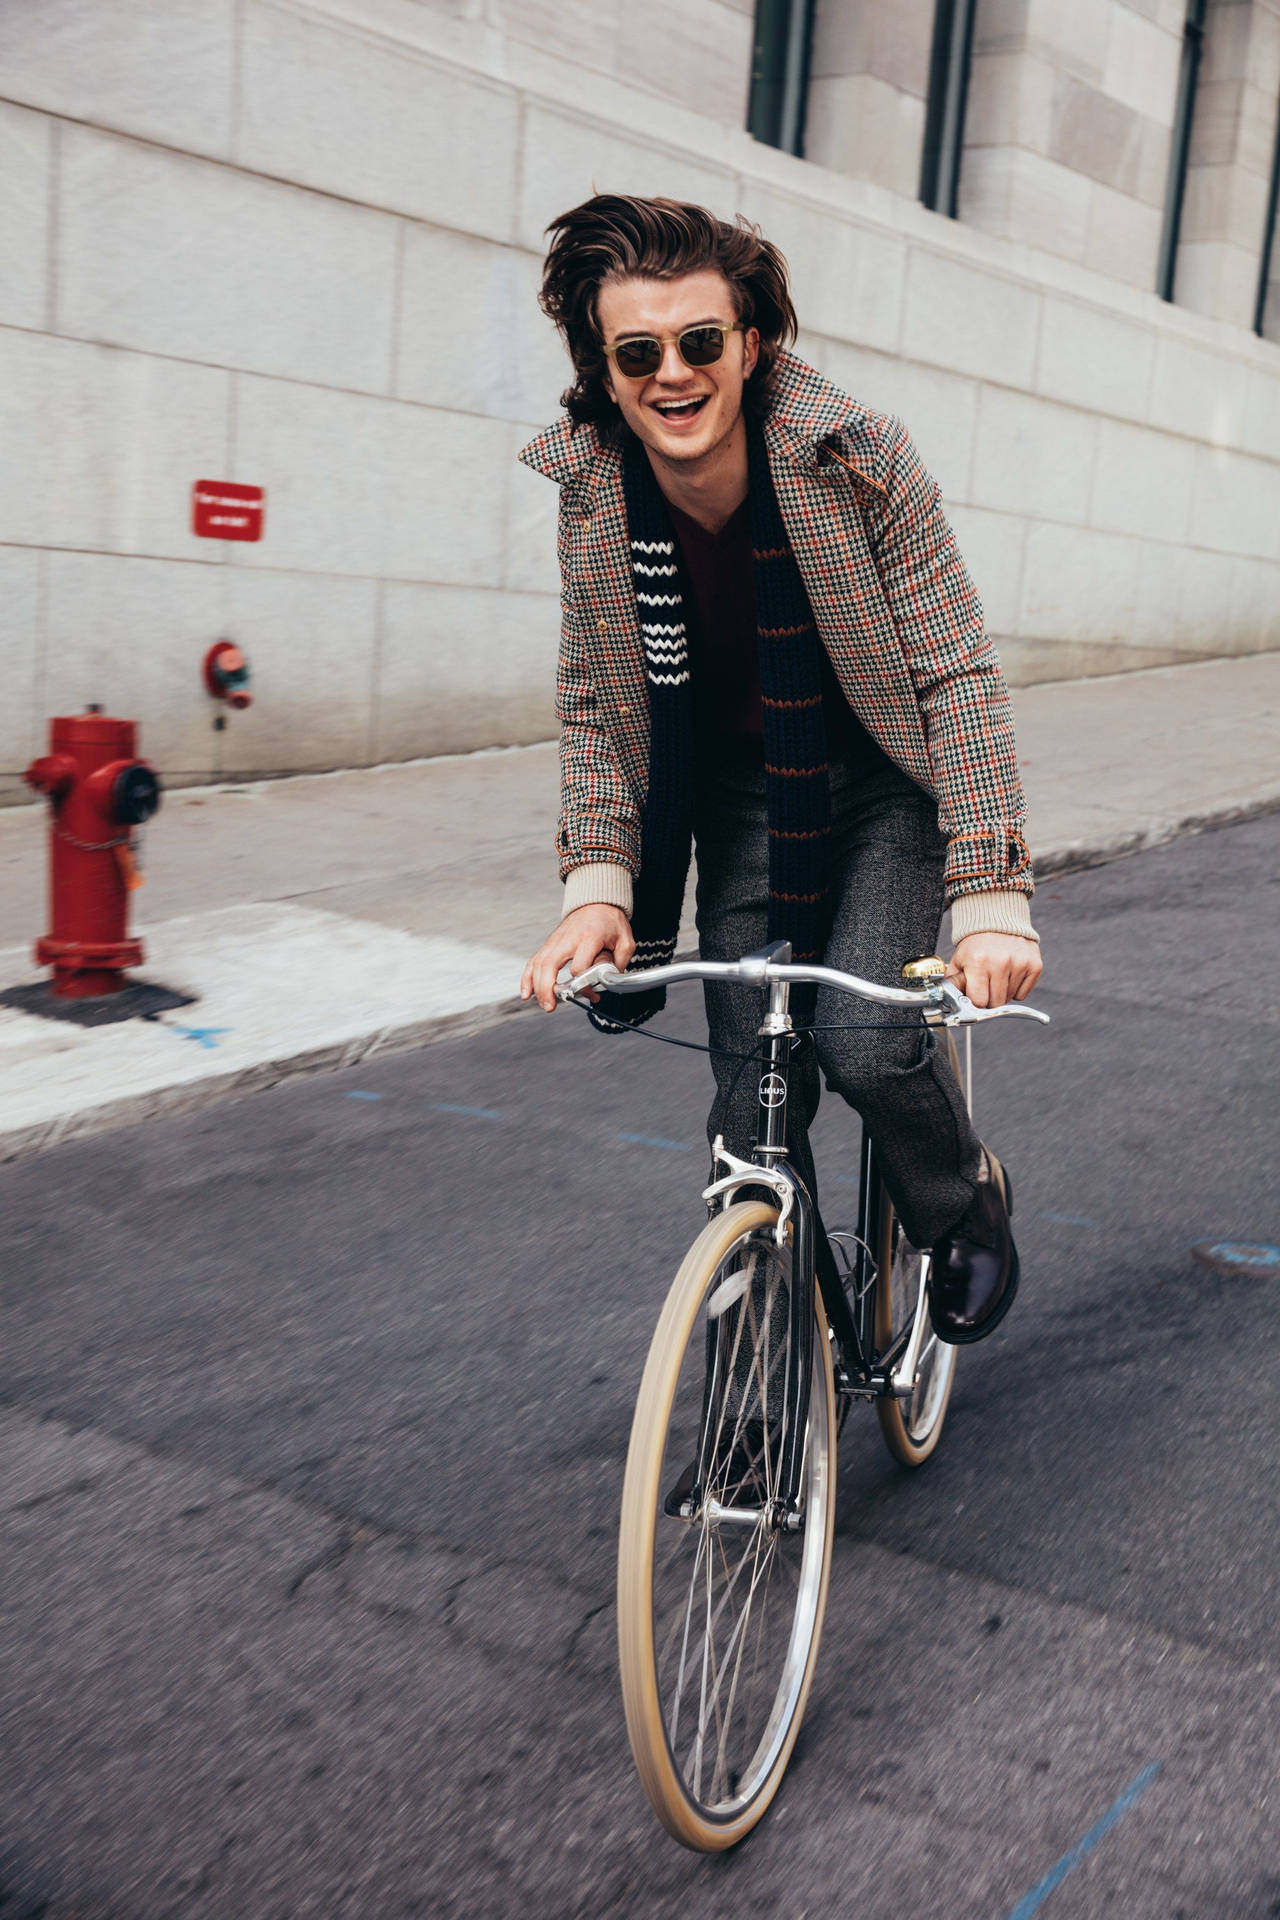 Joe Keery Riding A Bike Background